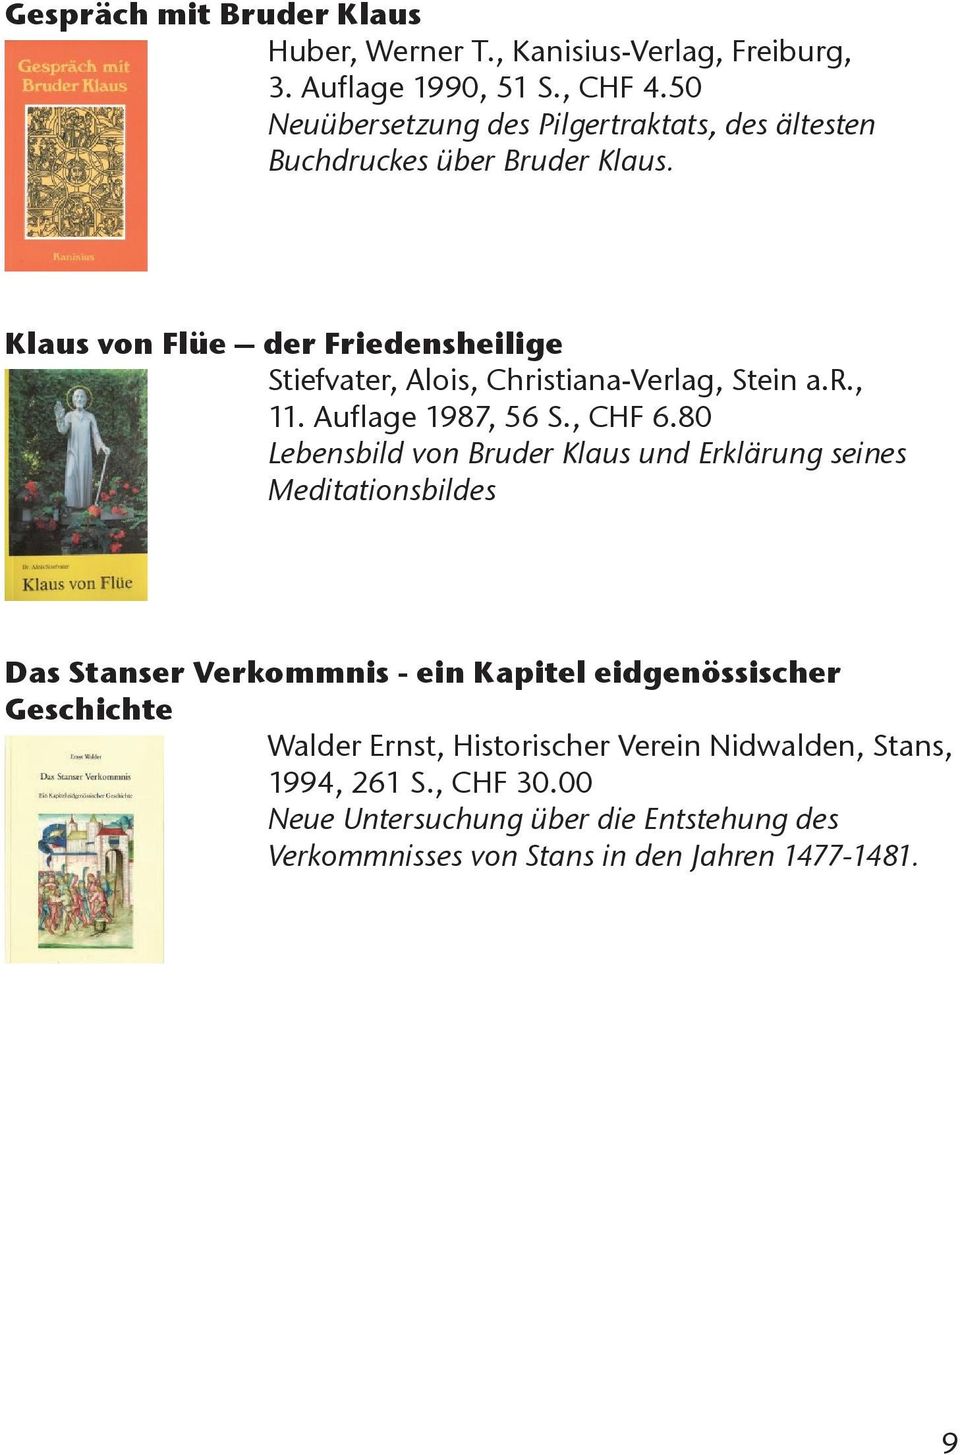 Klaus von Flüe der Friedensheilige Stiefvater, Alois, Christiana-Verlag, Stein a.r., 11. Auflage 1987, 56 S., CHF 6.